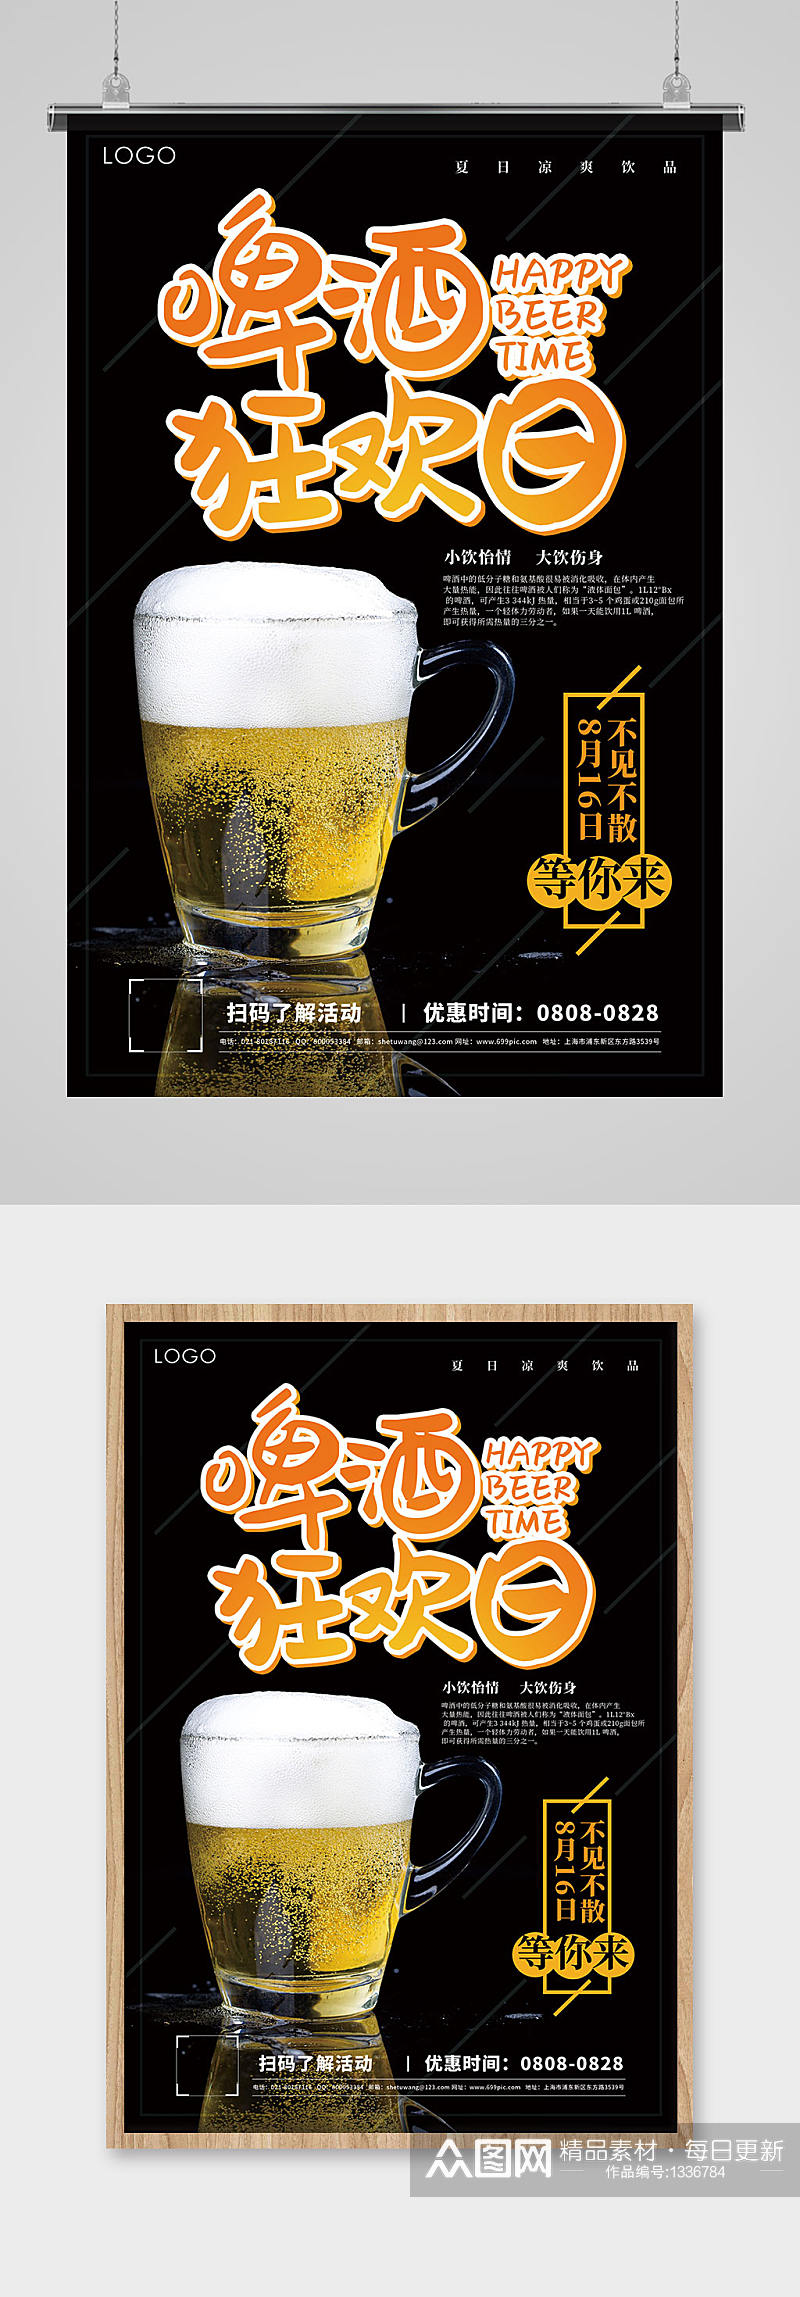 啤酒狂欢节促销宣传海报素材